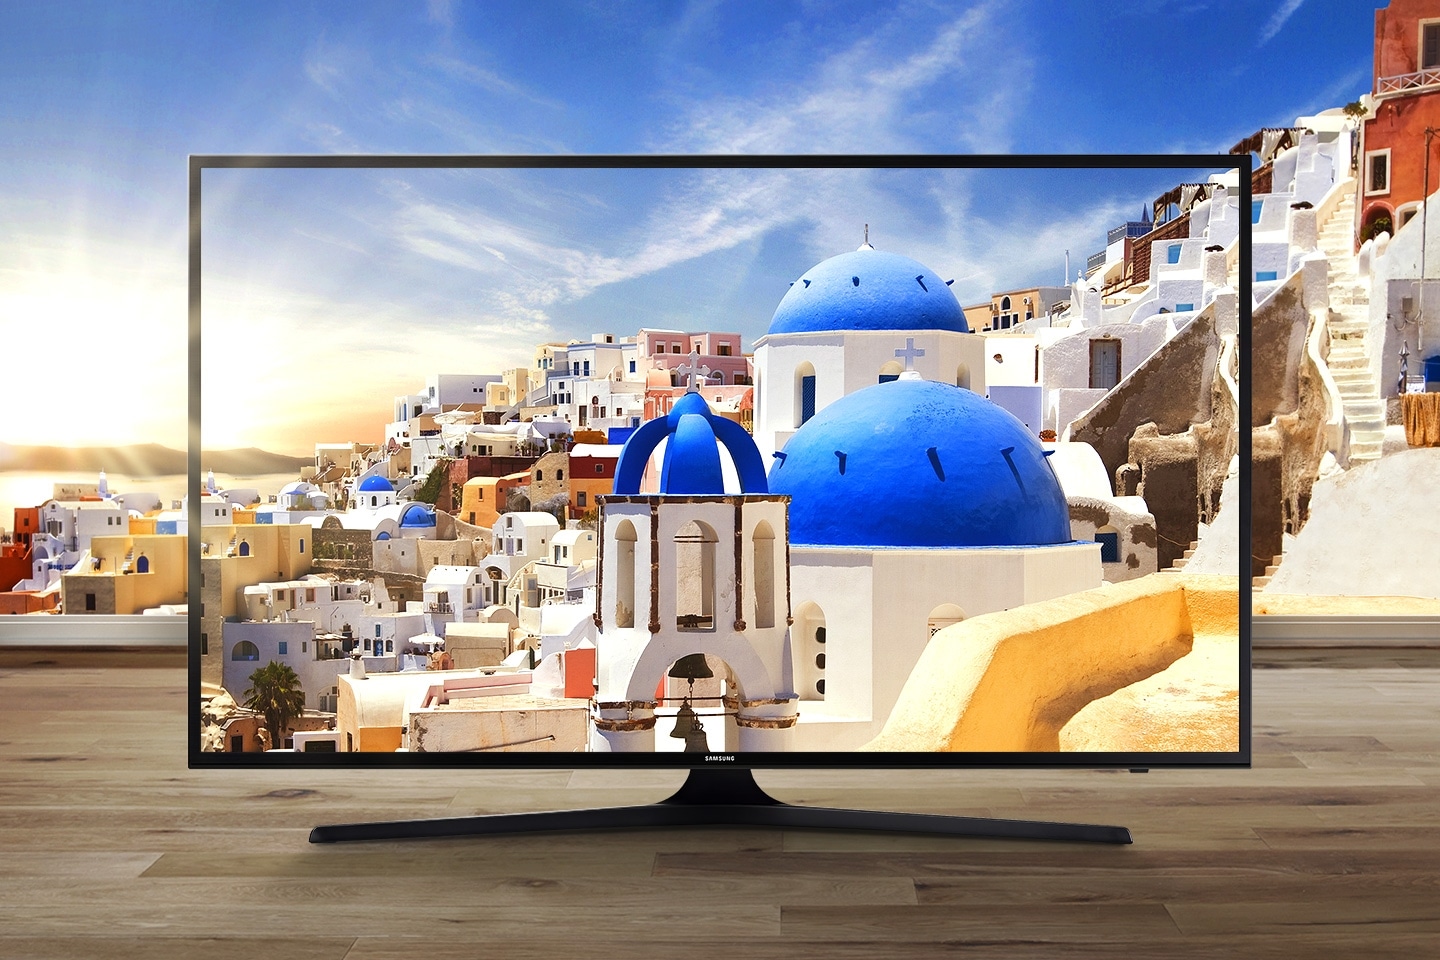 Helle und lebendige Aufnahme eines Wals auf einem Samsung SUHD TV-Bildschirm.